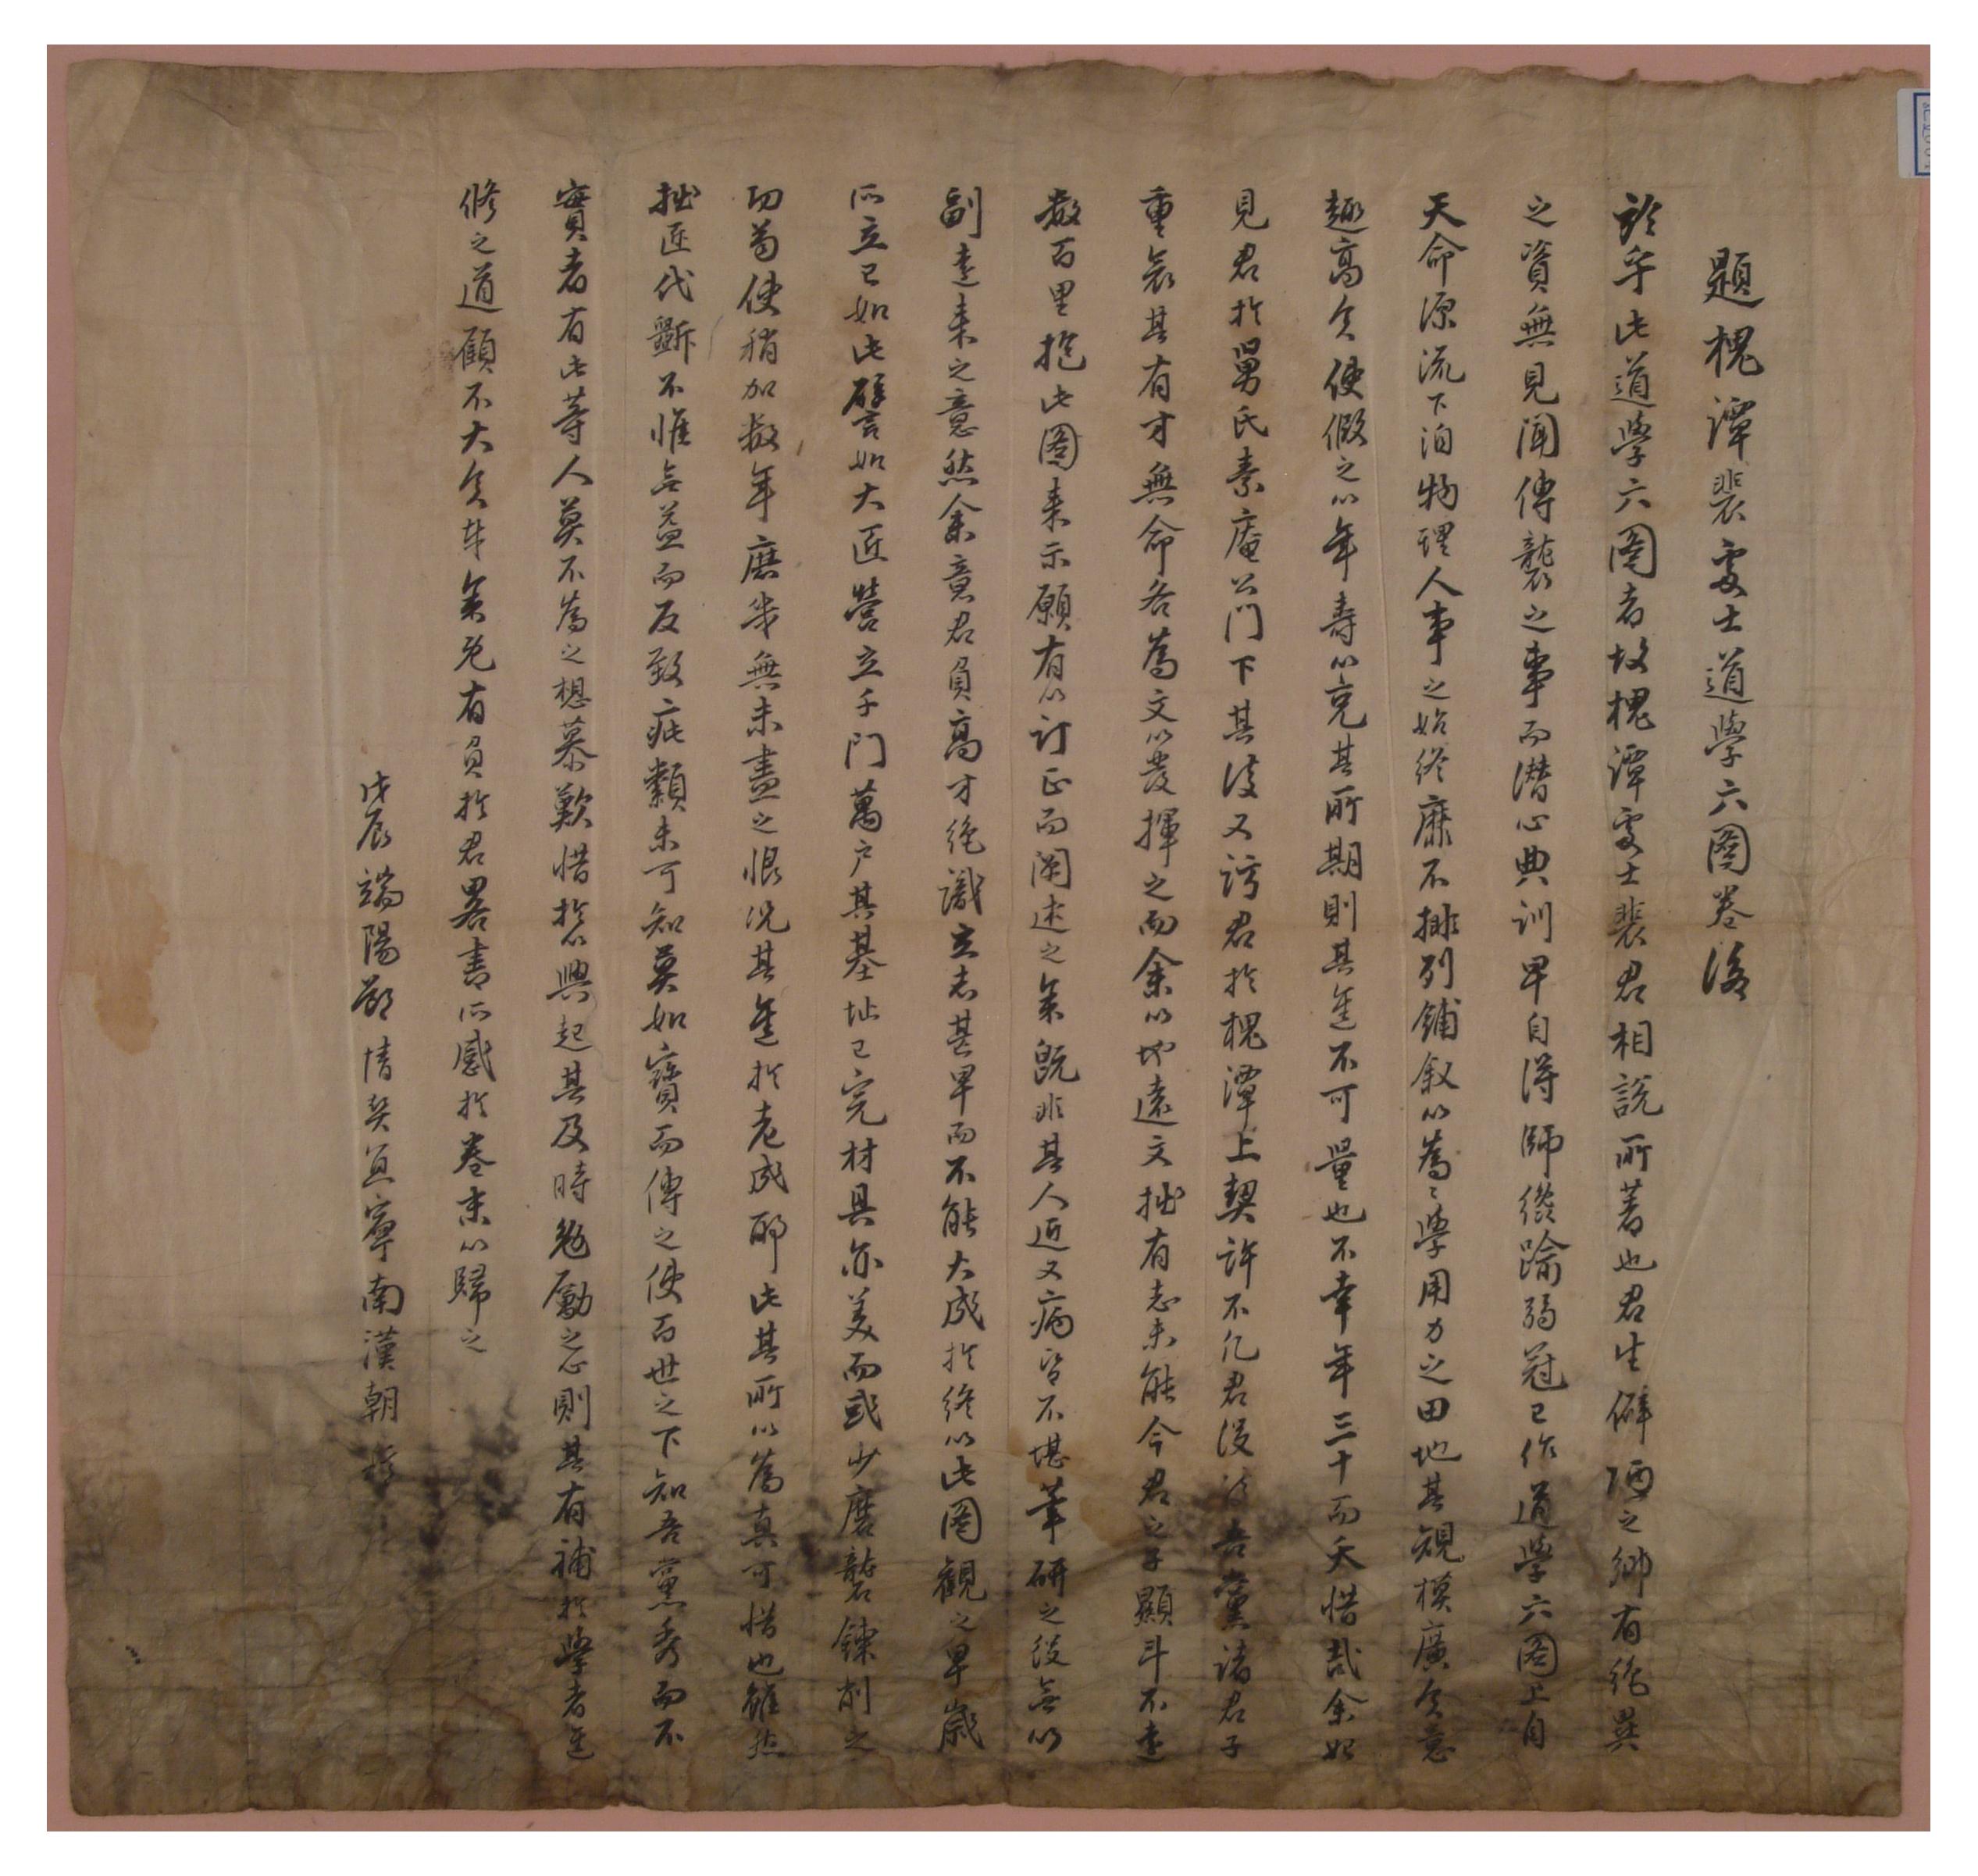 1808년에 손재남한조가 지은 괴담 배상열의《도학육도》의 후문